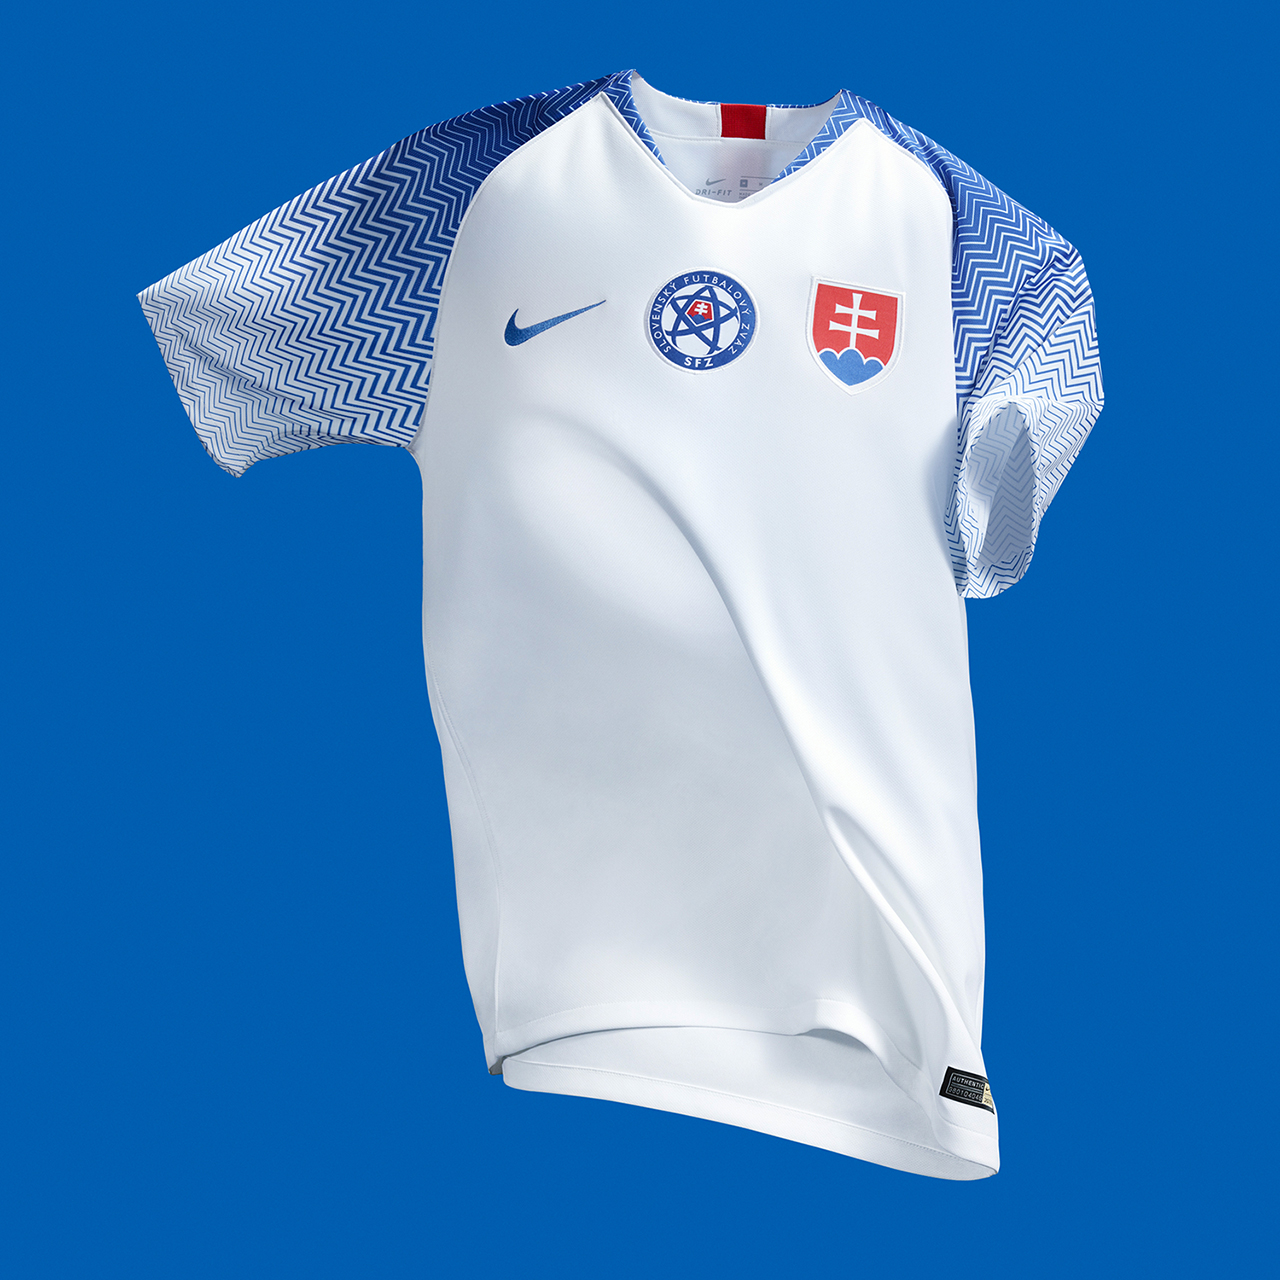 Camiseta Nike de Eslovaquia 2018